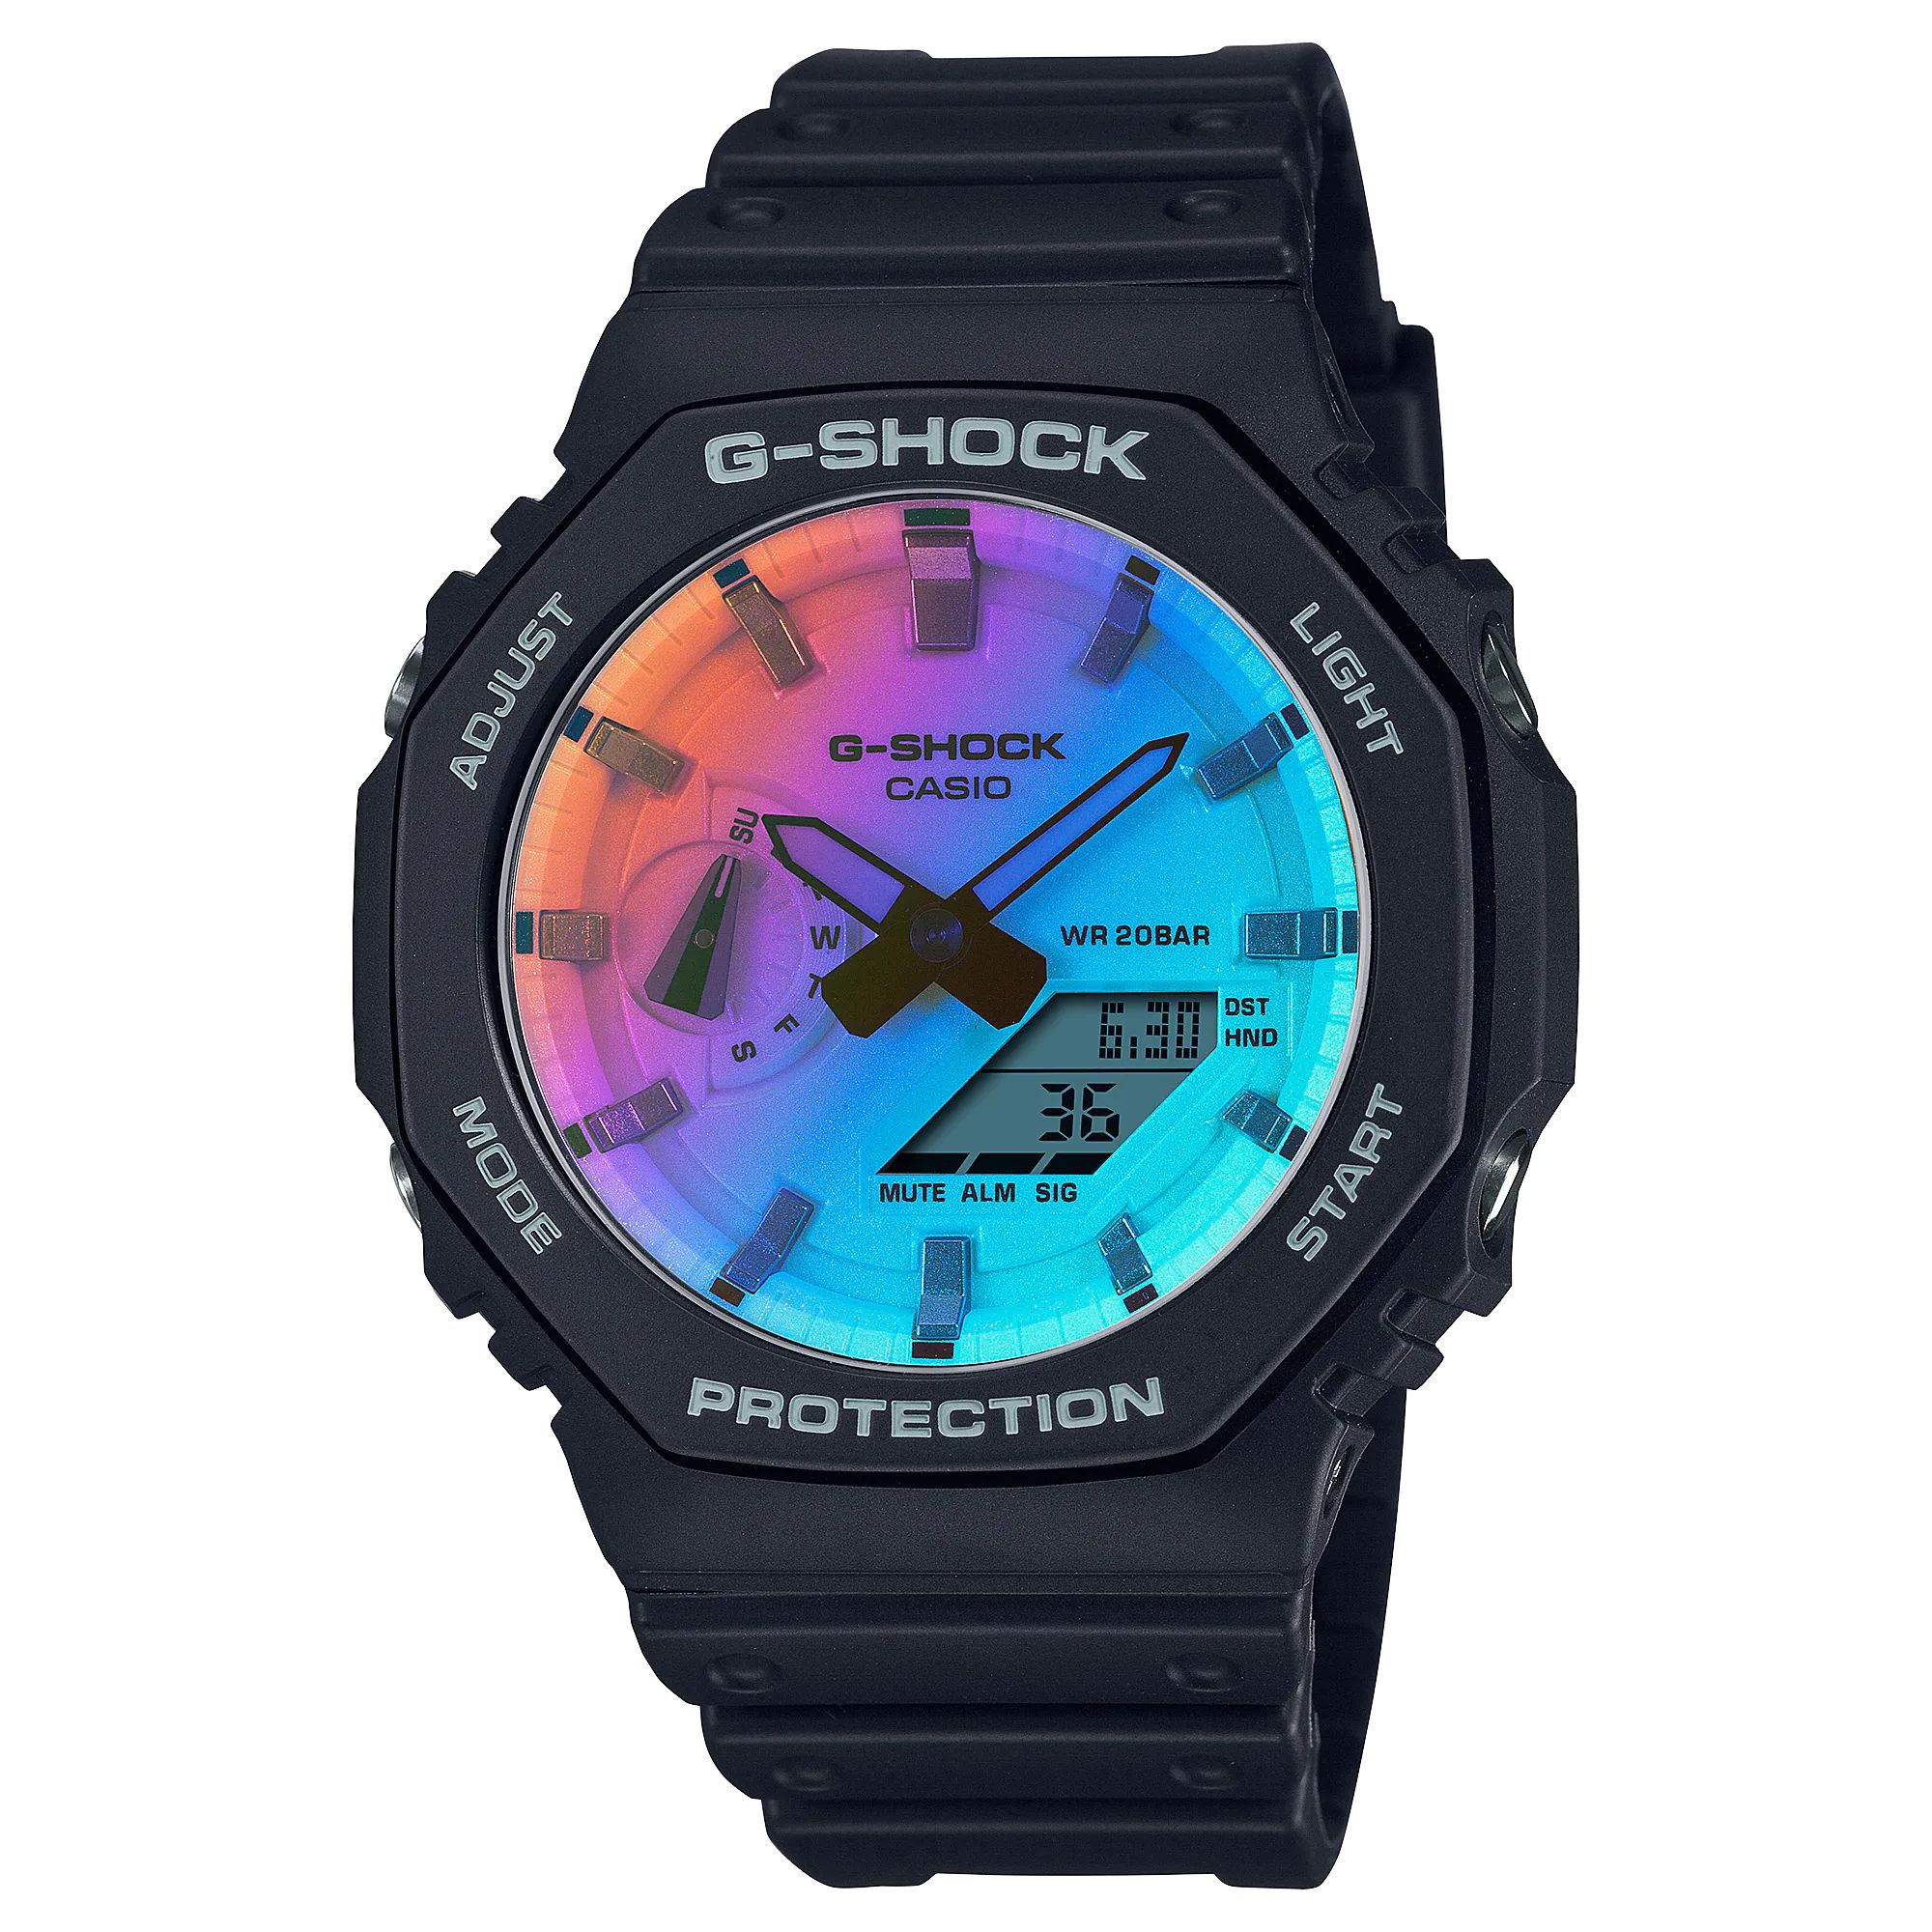 G-SHOCK GA-2100SR-1A Iridescent Color アナデジ メンズ 腕時計 ブラック Gショック ジーショック 逆輸入海外モデル